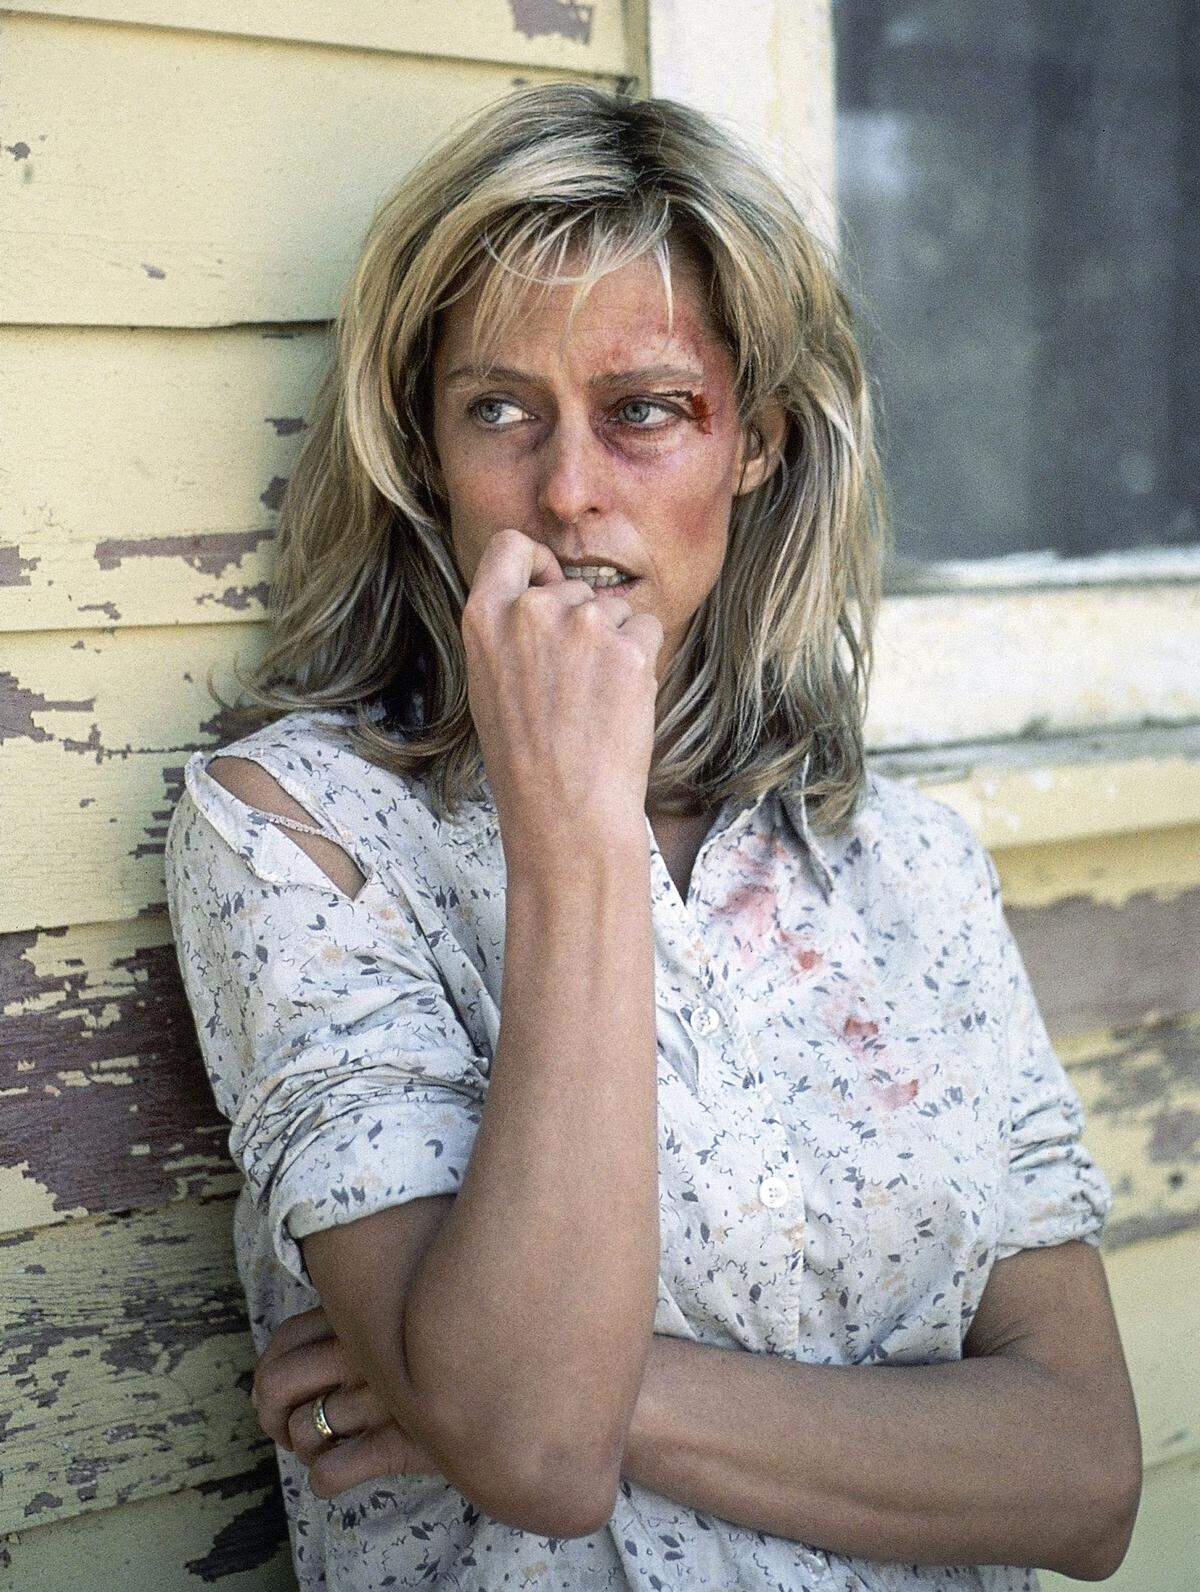 1984 brillierte sie im Film "Das brennende Bett" in der Rolle einer verzweifelten Mutter, die nach jahrelangem Ehemartyrium ihren Mann mit Benzin übergießt.